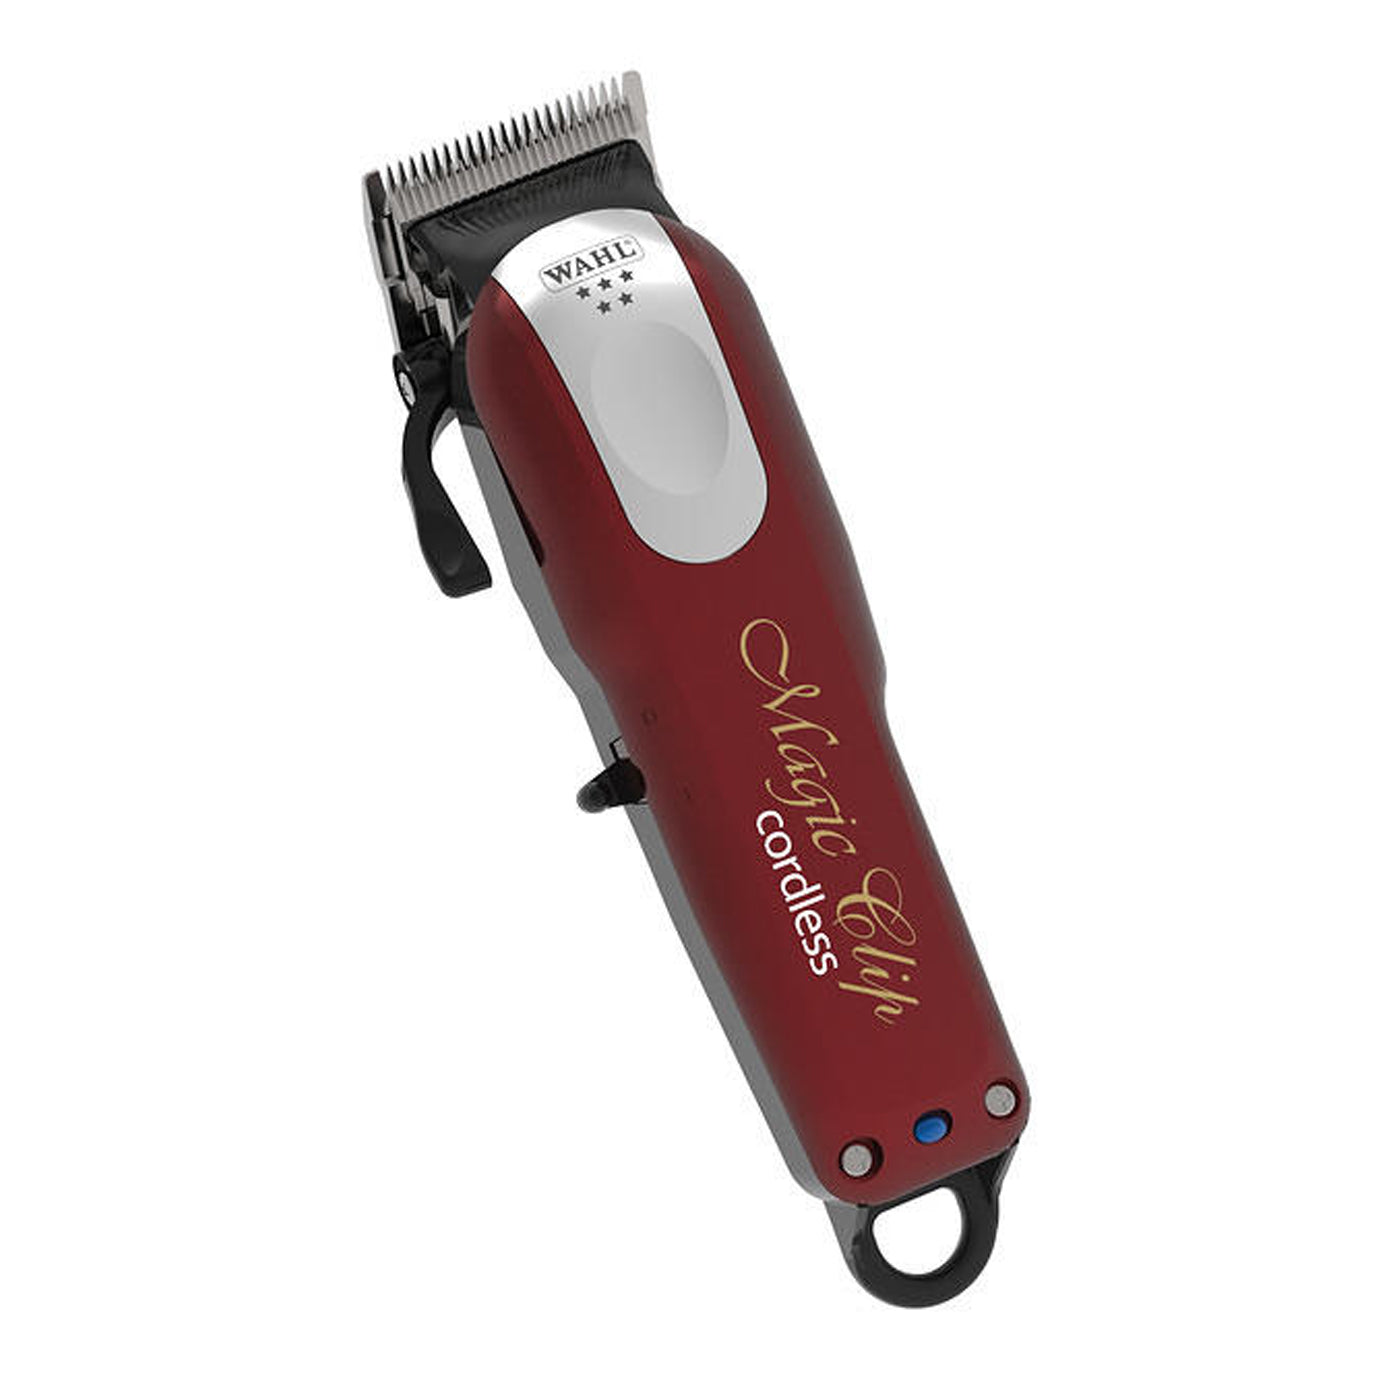 wahl hair trimmer magic clip